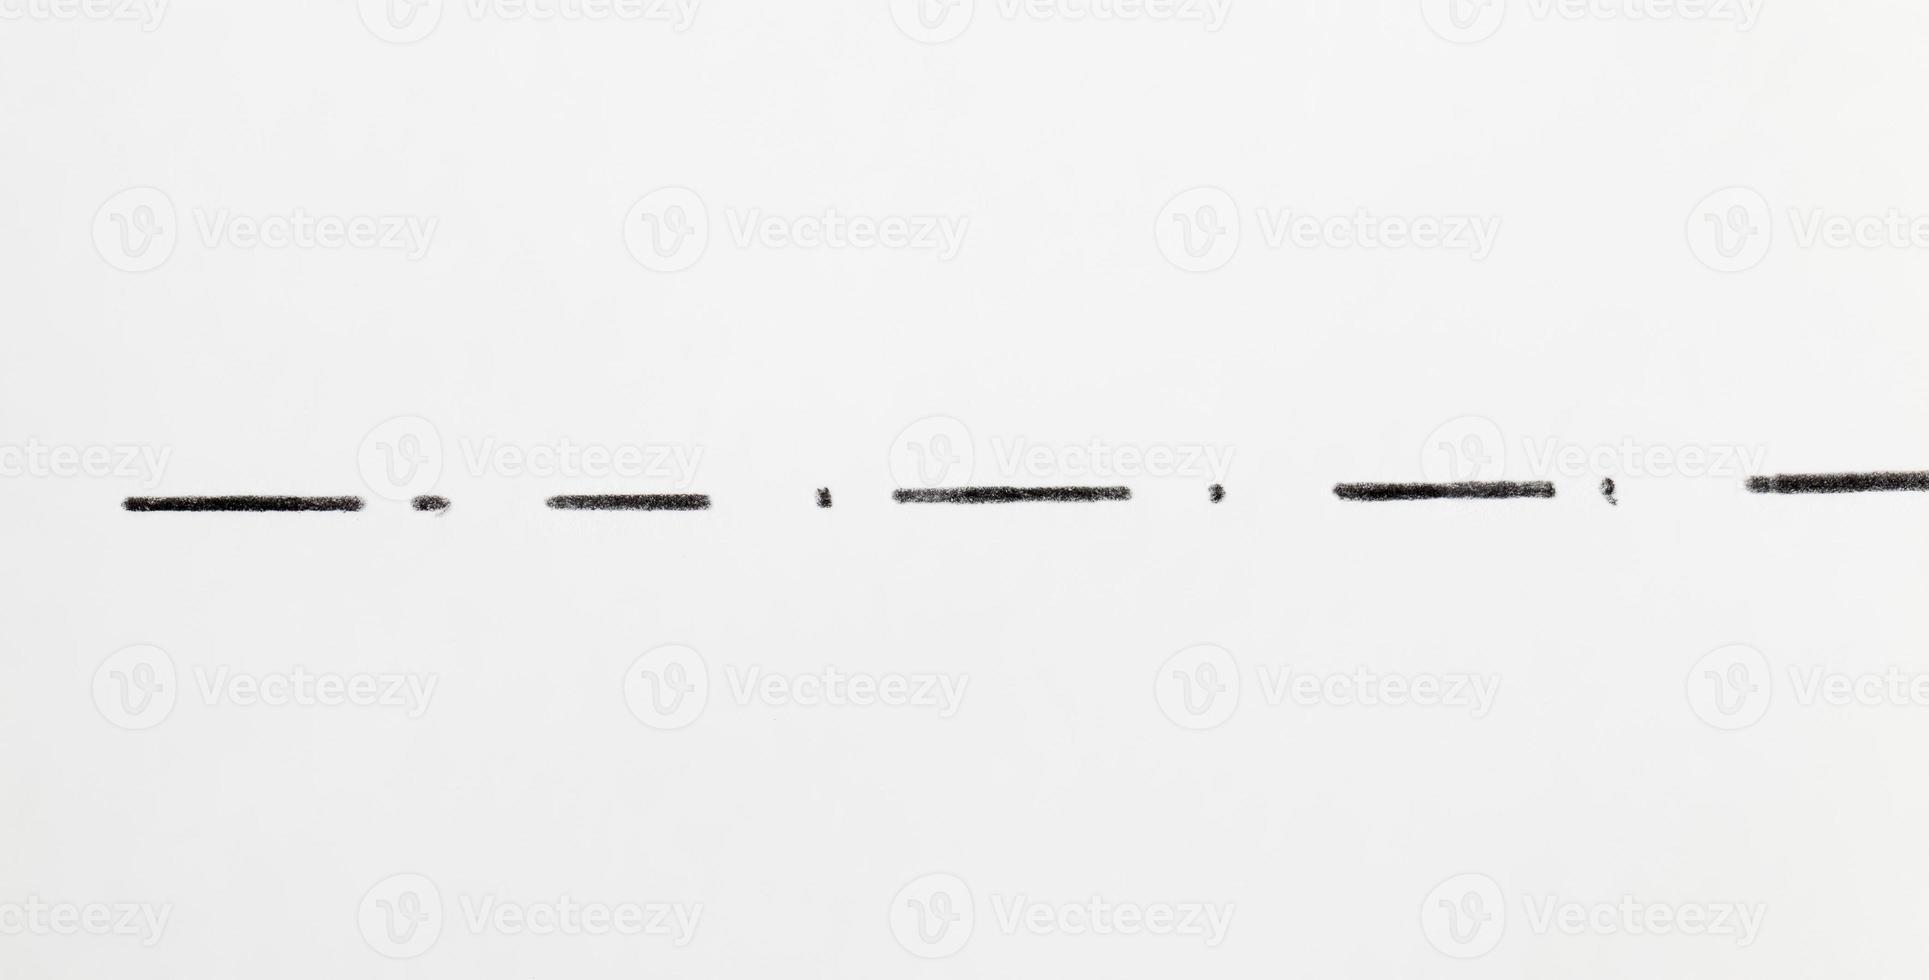 kaotiska grå linjer ritade med blyerts på vanligt papper foto